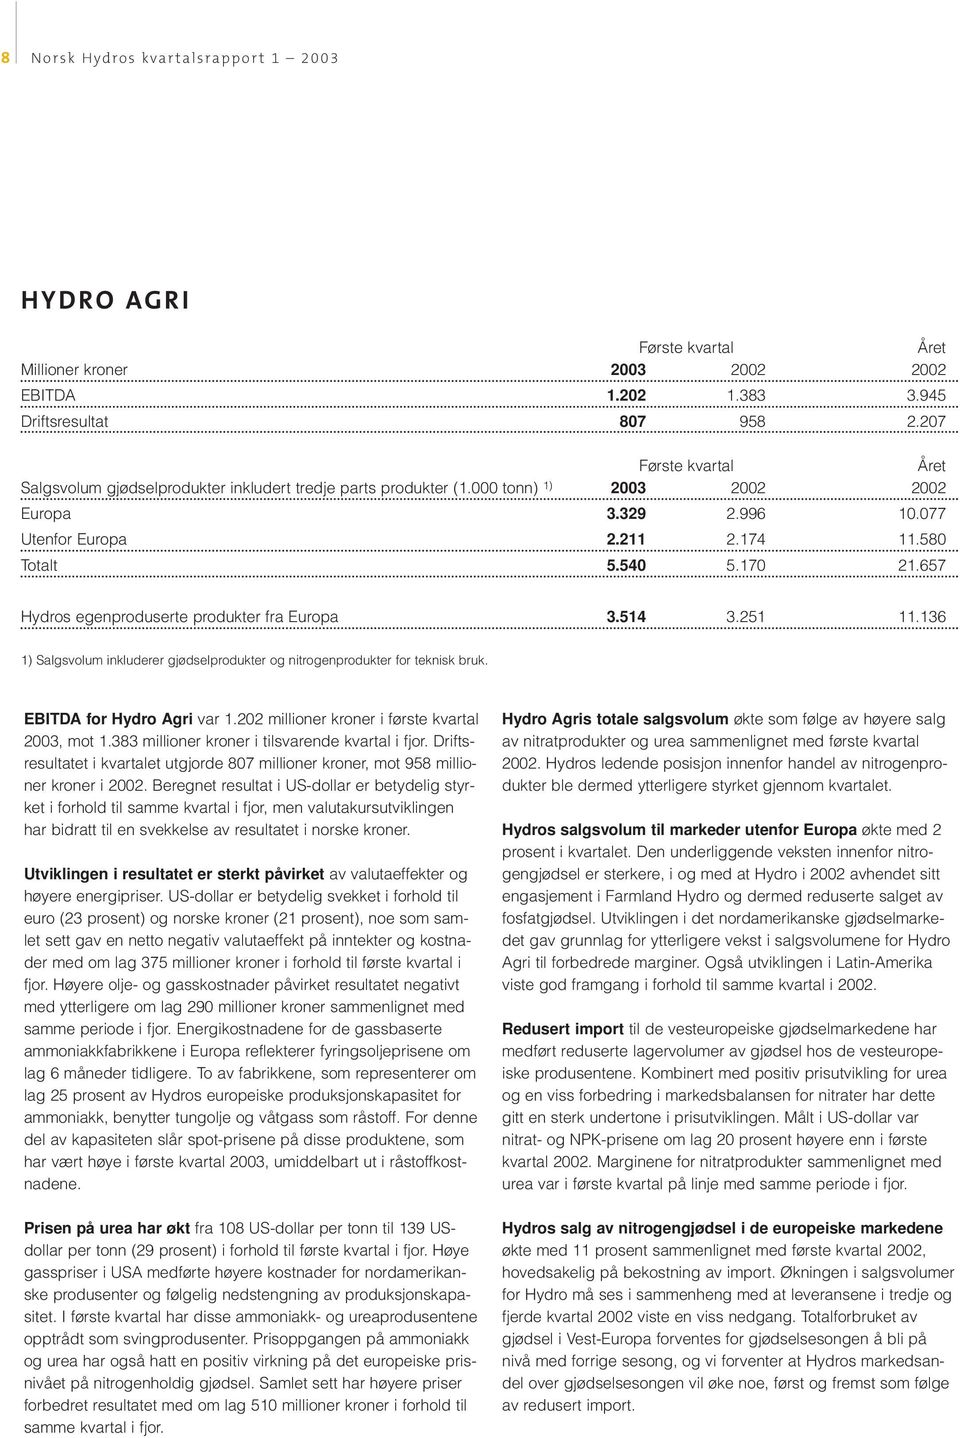 136 1) Salgsvolum inkluderer gjødselprodukter og nitrogenprodukter for teknisk bruk. EBITDA for Hydro Agri var 1.202 millioner kroner i første kvartal 2003, mot 1.